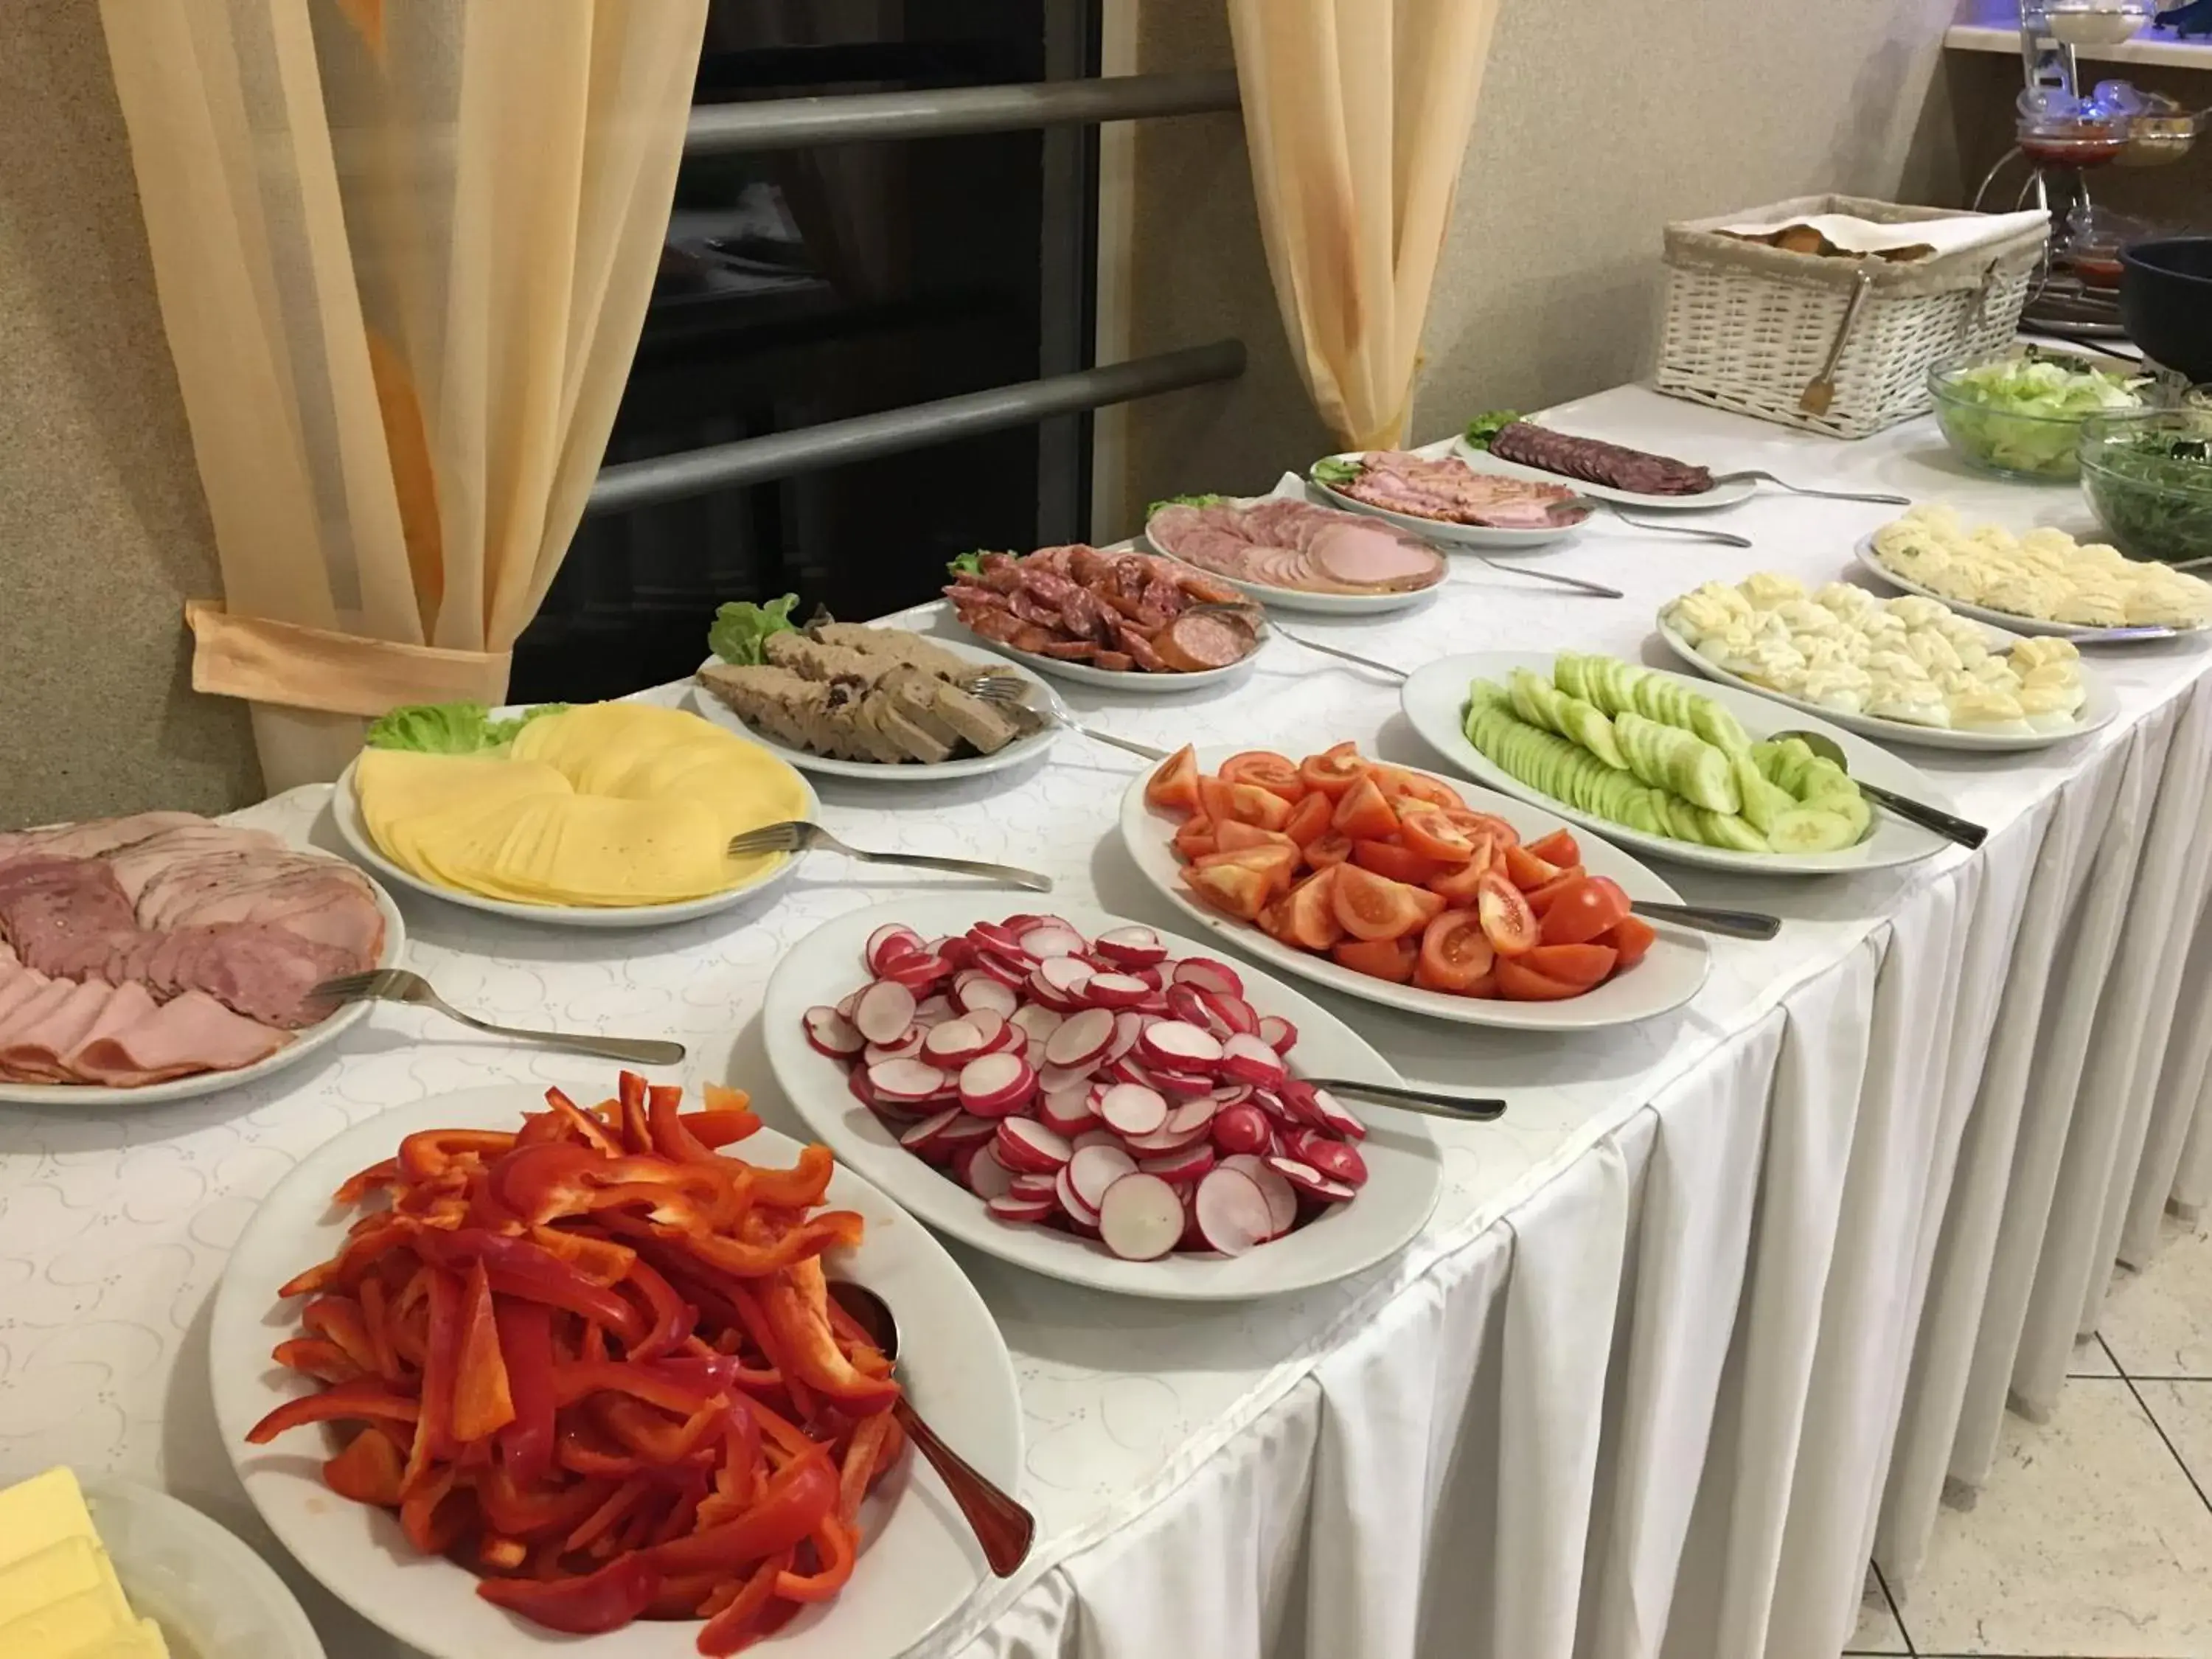 Buffet breakfast in Hotel Miramar